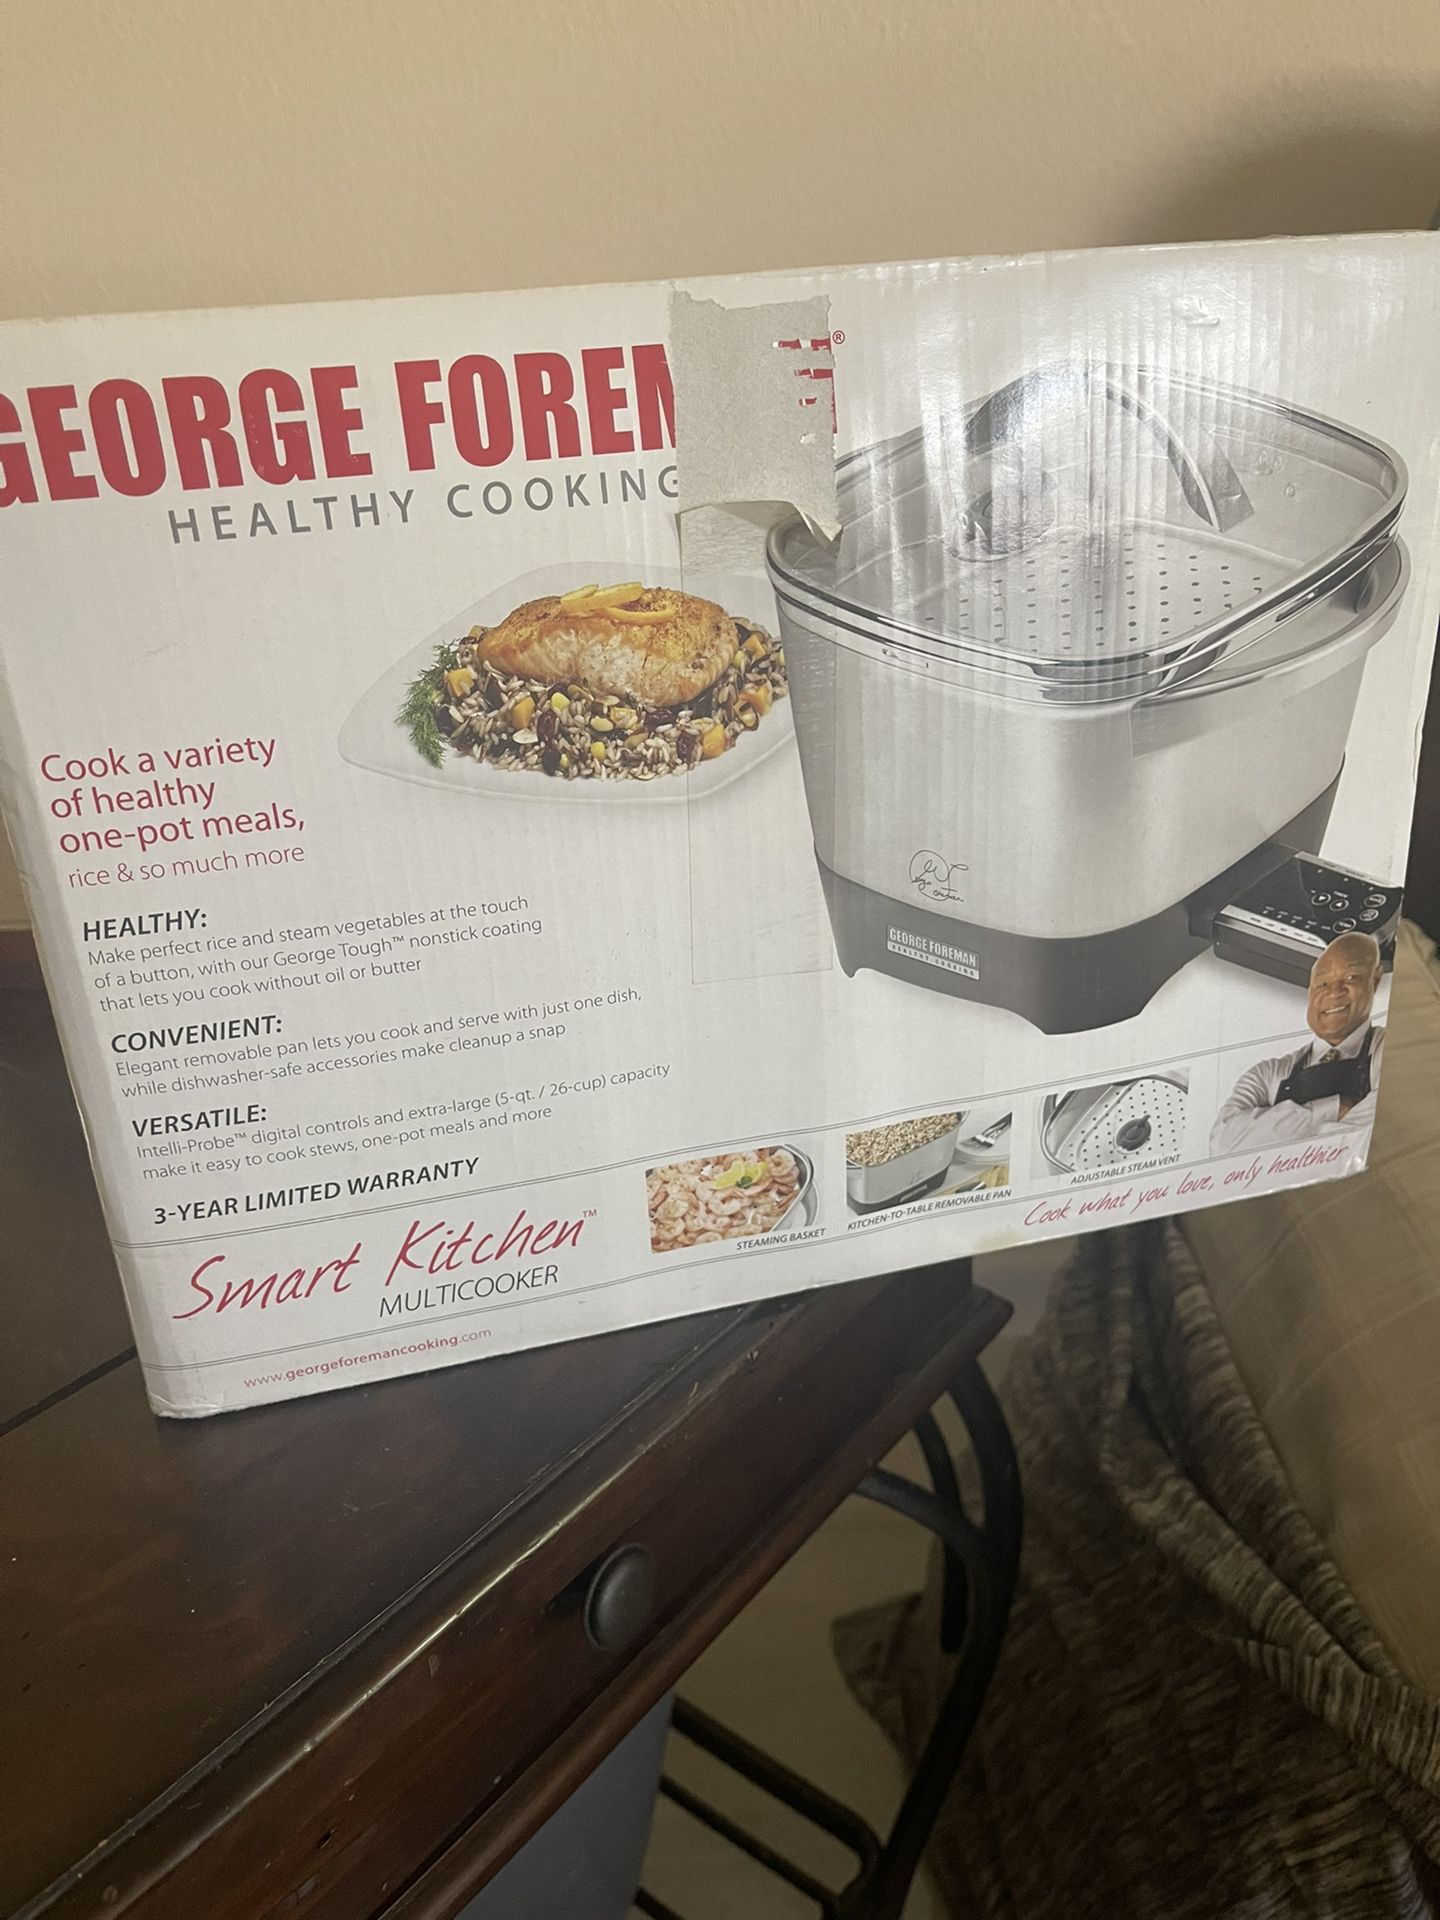 George Foreman Smart Kitchen Steamer